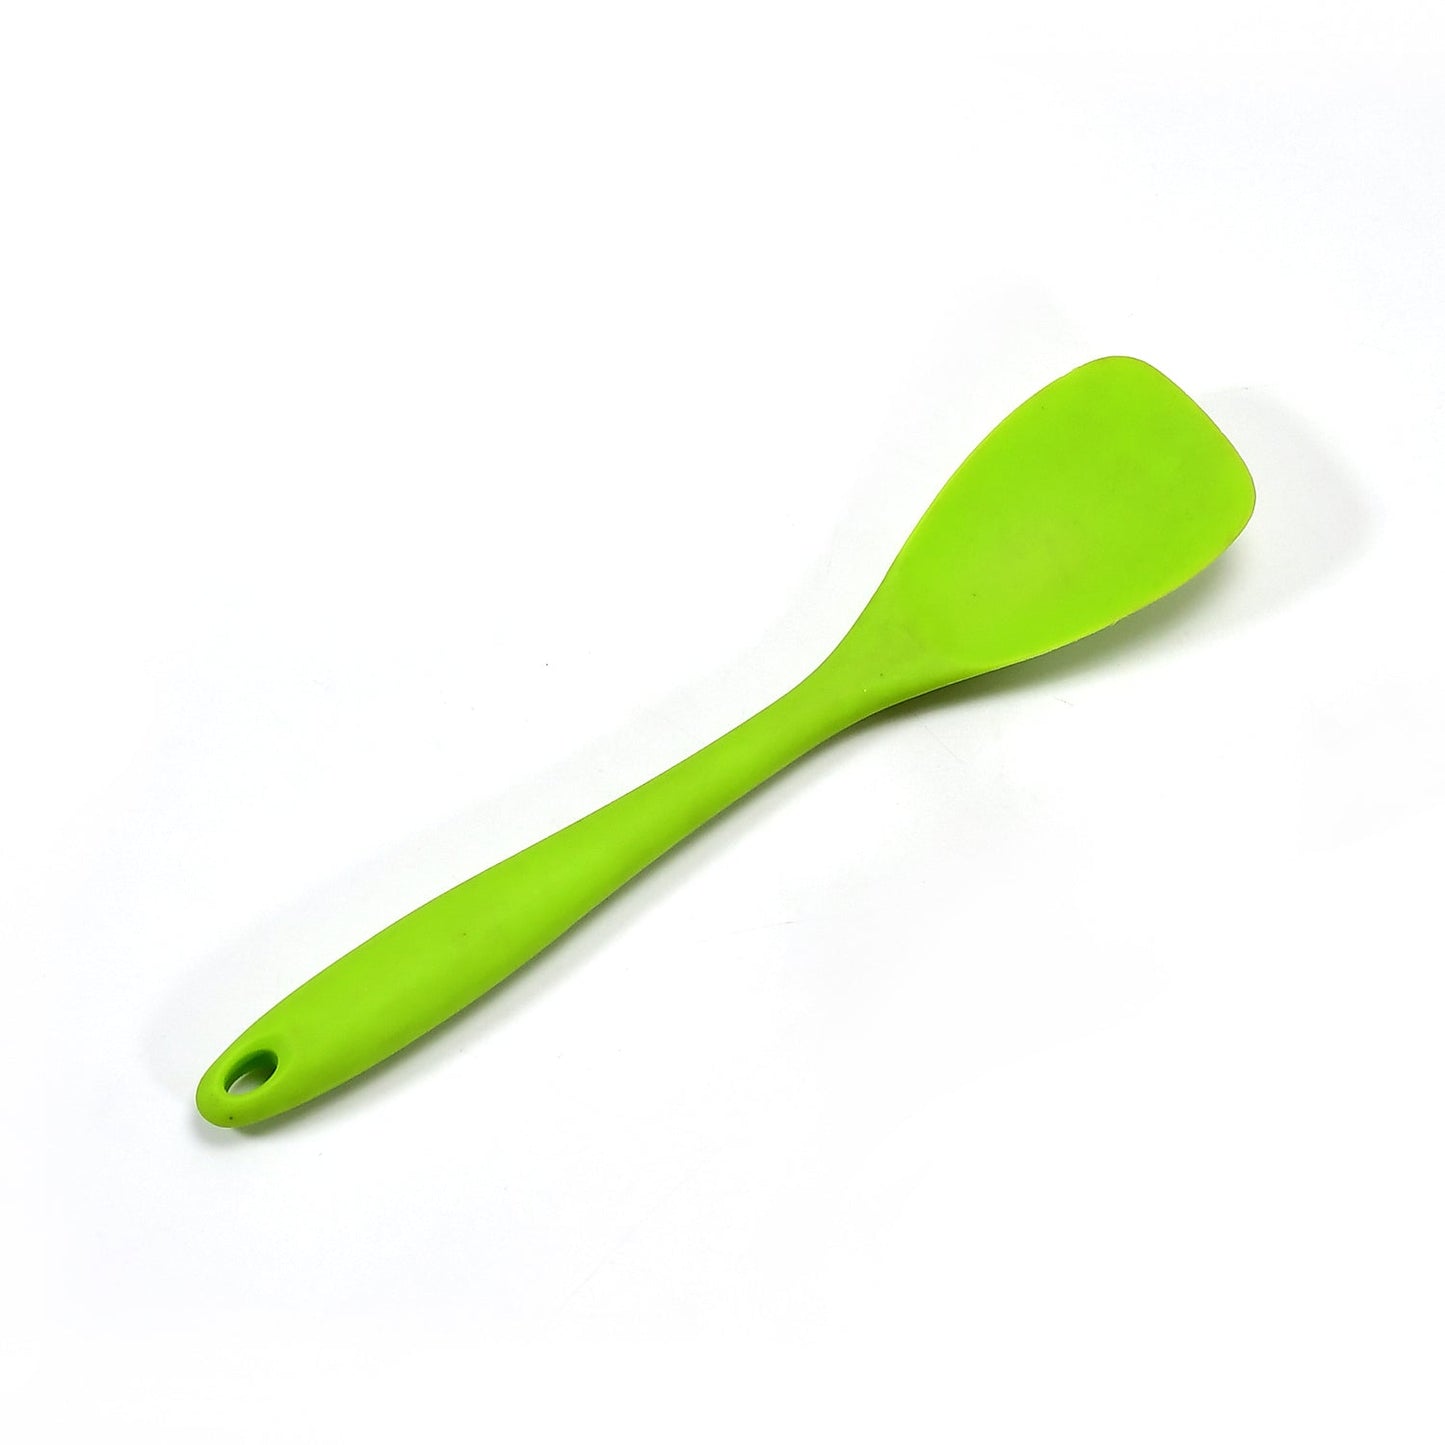 Silicone Spoonula, Spatula Spoon, High Heat Resistant, Non Stick Rubber Utensil